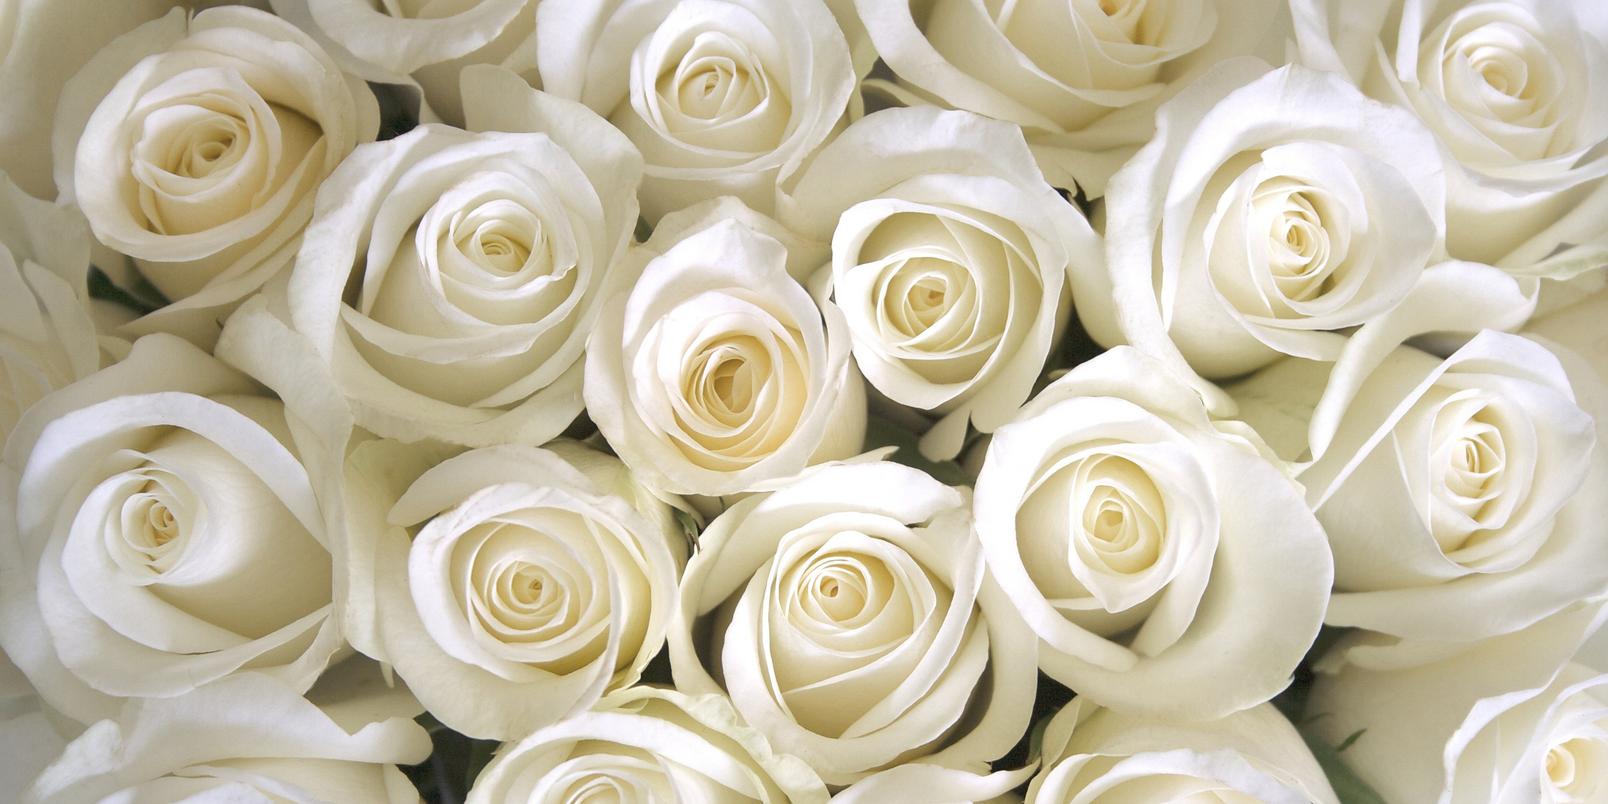 roses-white-flowers